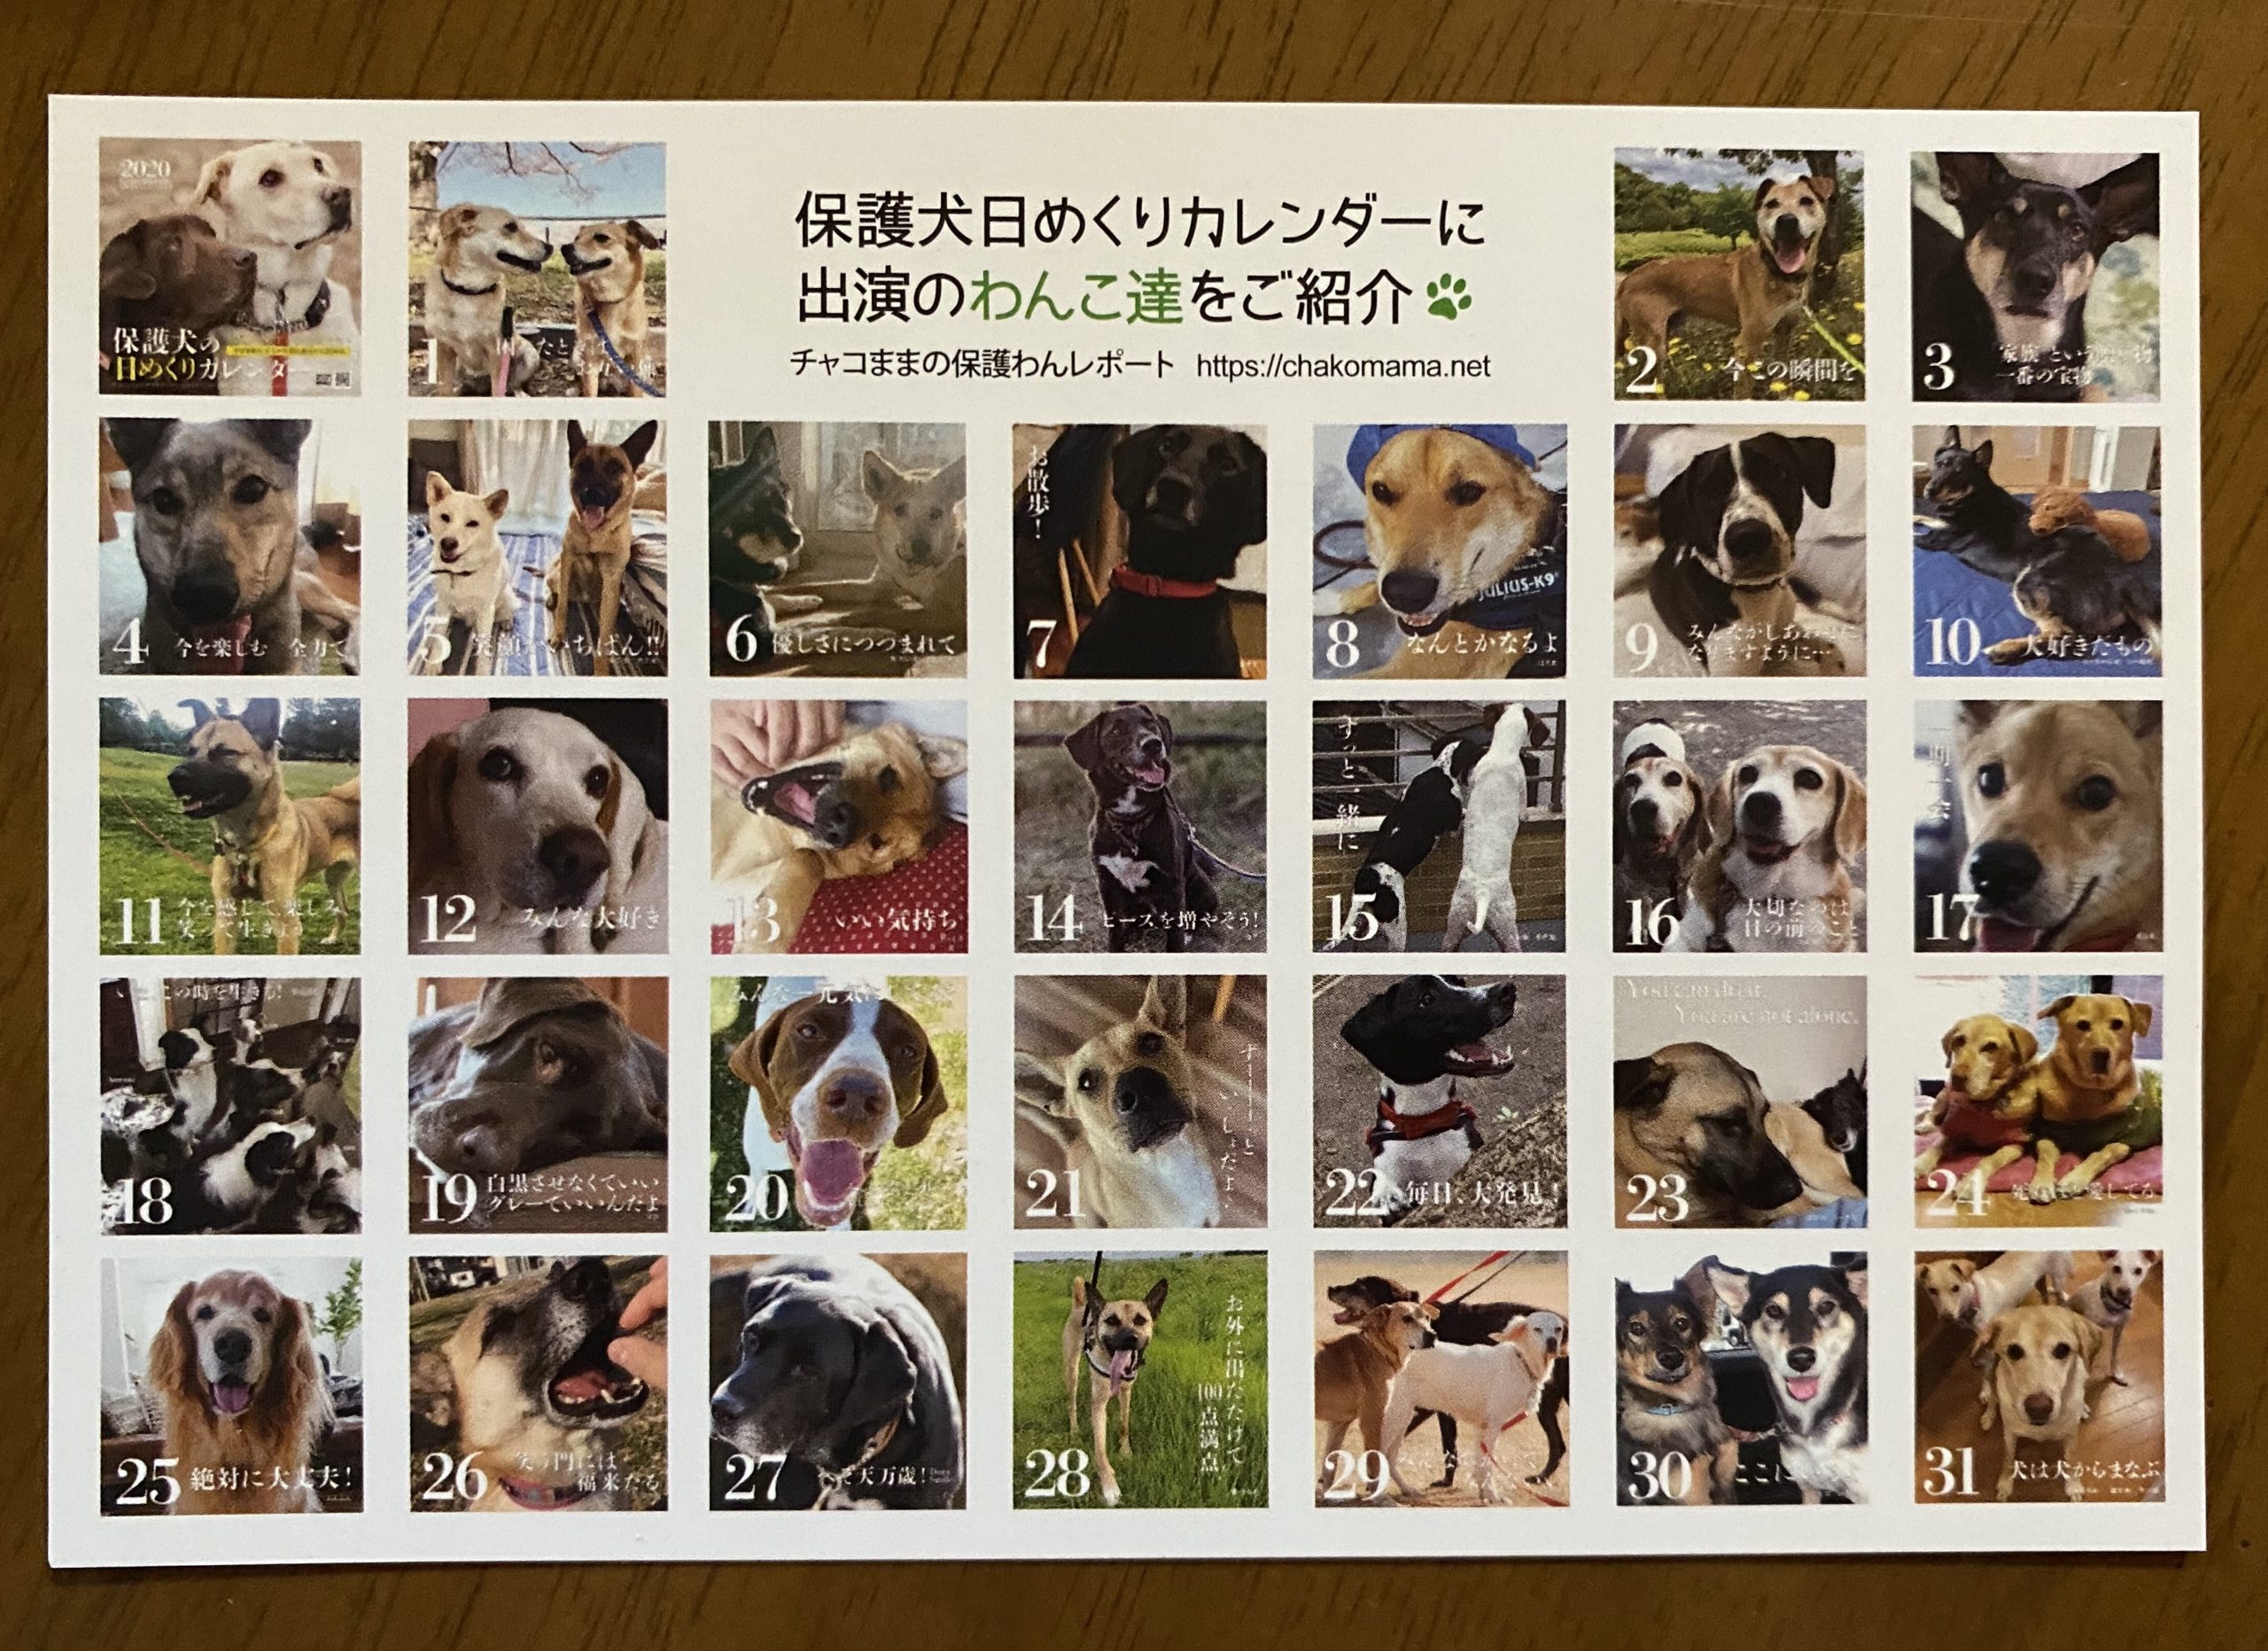 デザイナーさんとの打合せはこんな風に進んでいます 日めくりカレンダー制作裏話 チャコまま 茨城 犬の里親探し 保護犬活動の個人ボランティア